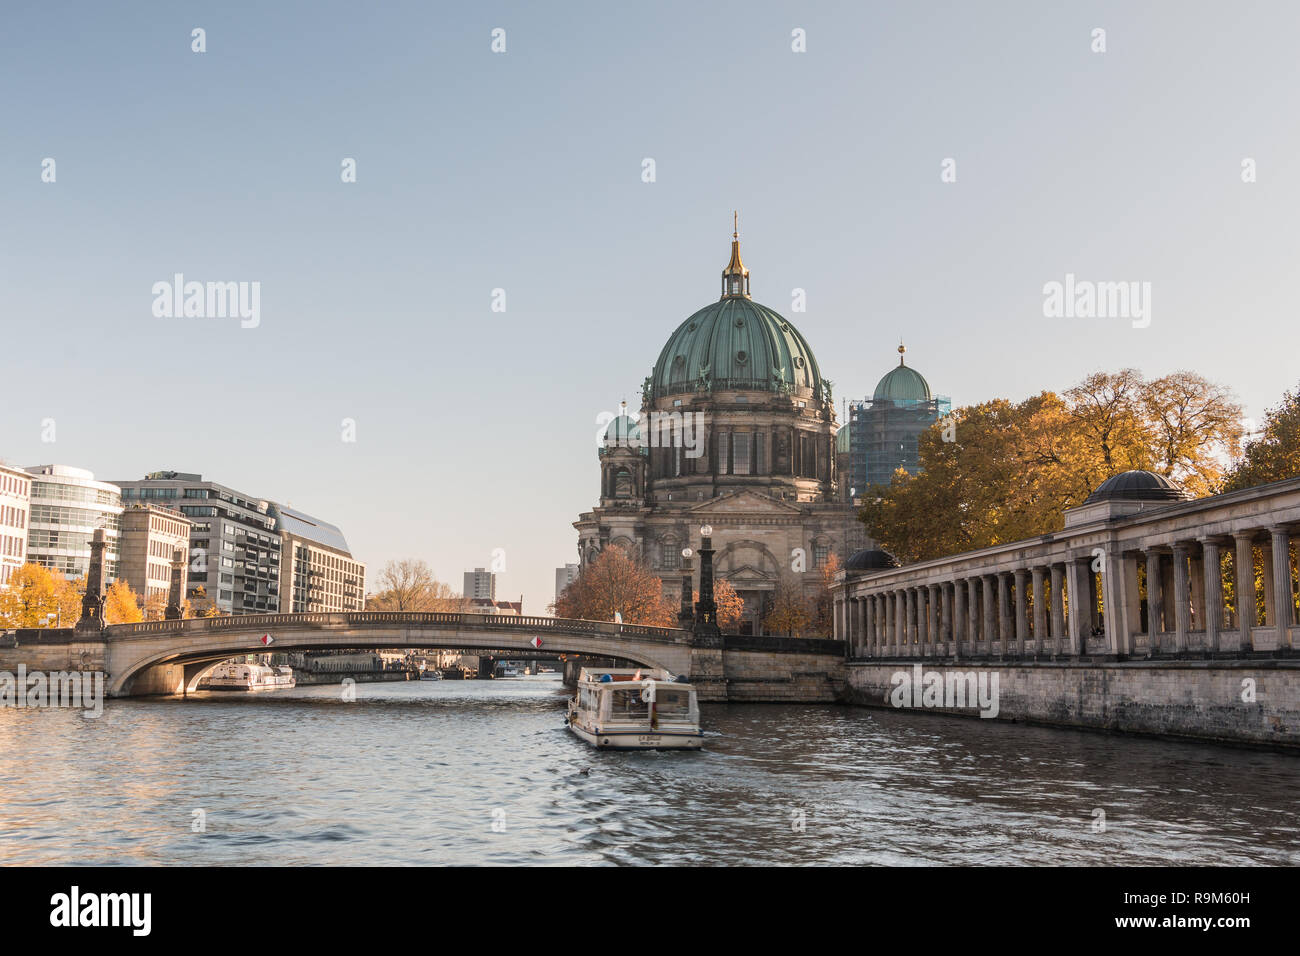 Cathédrale de Berlin avec la Friedrich's Bridge au ciel bleu. Colonnade de la Galerie nationale sur la rive du fleuve de la Spree avec bateau sur le canal Banque D'Images